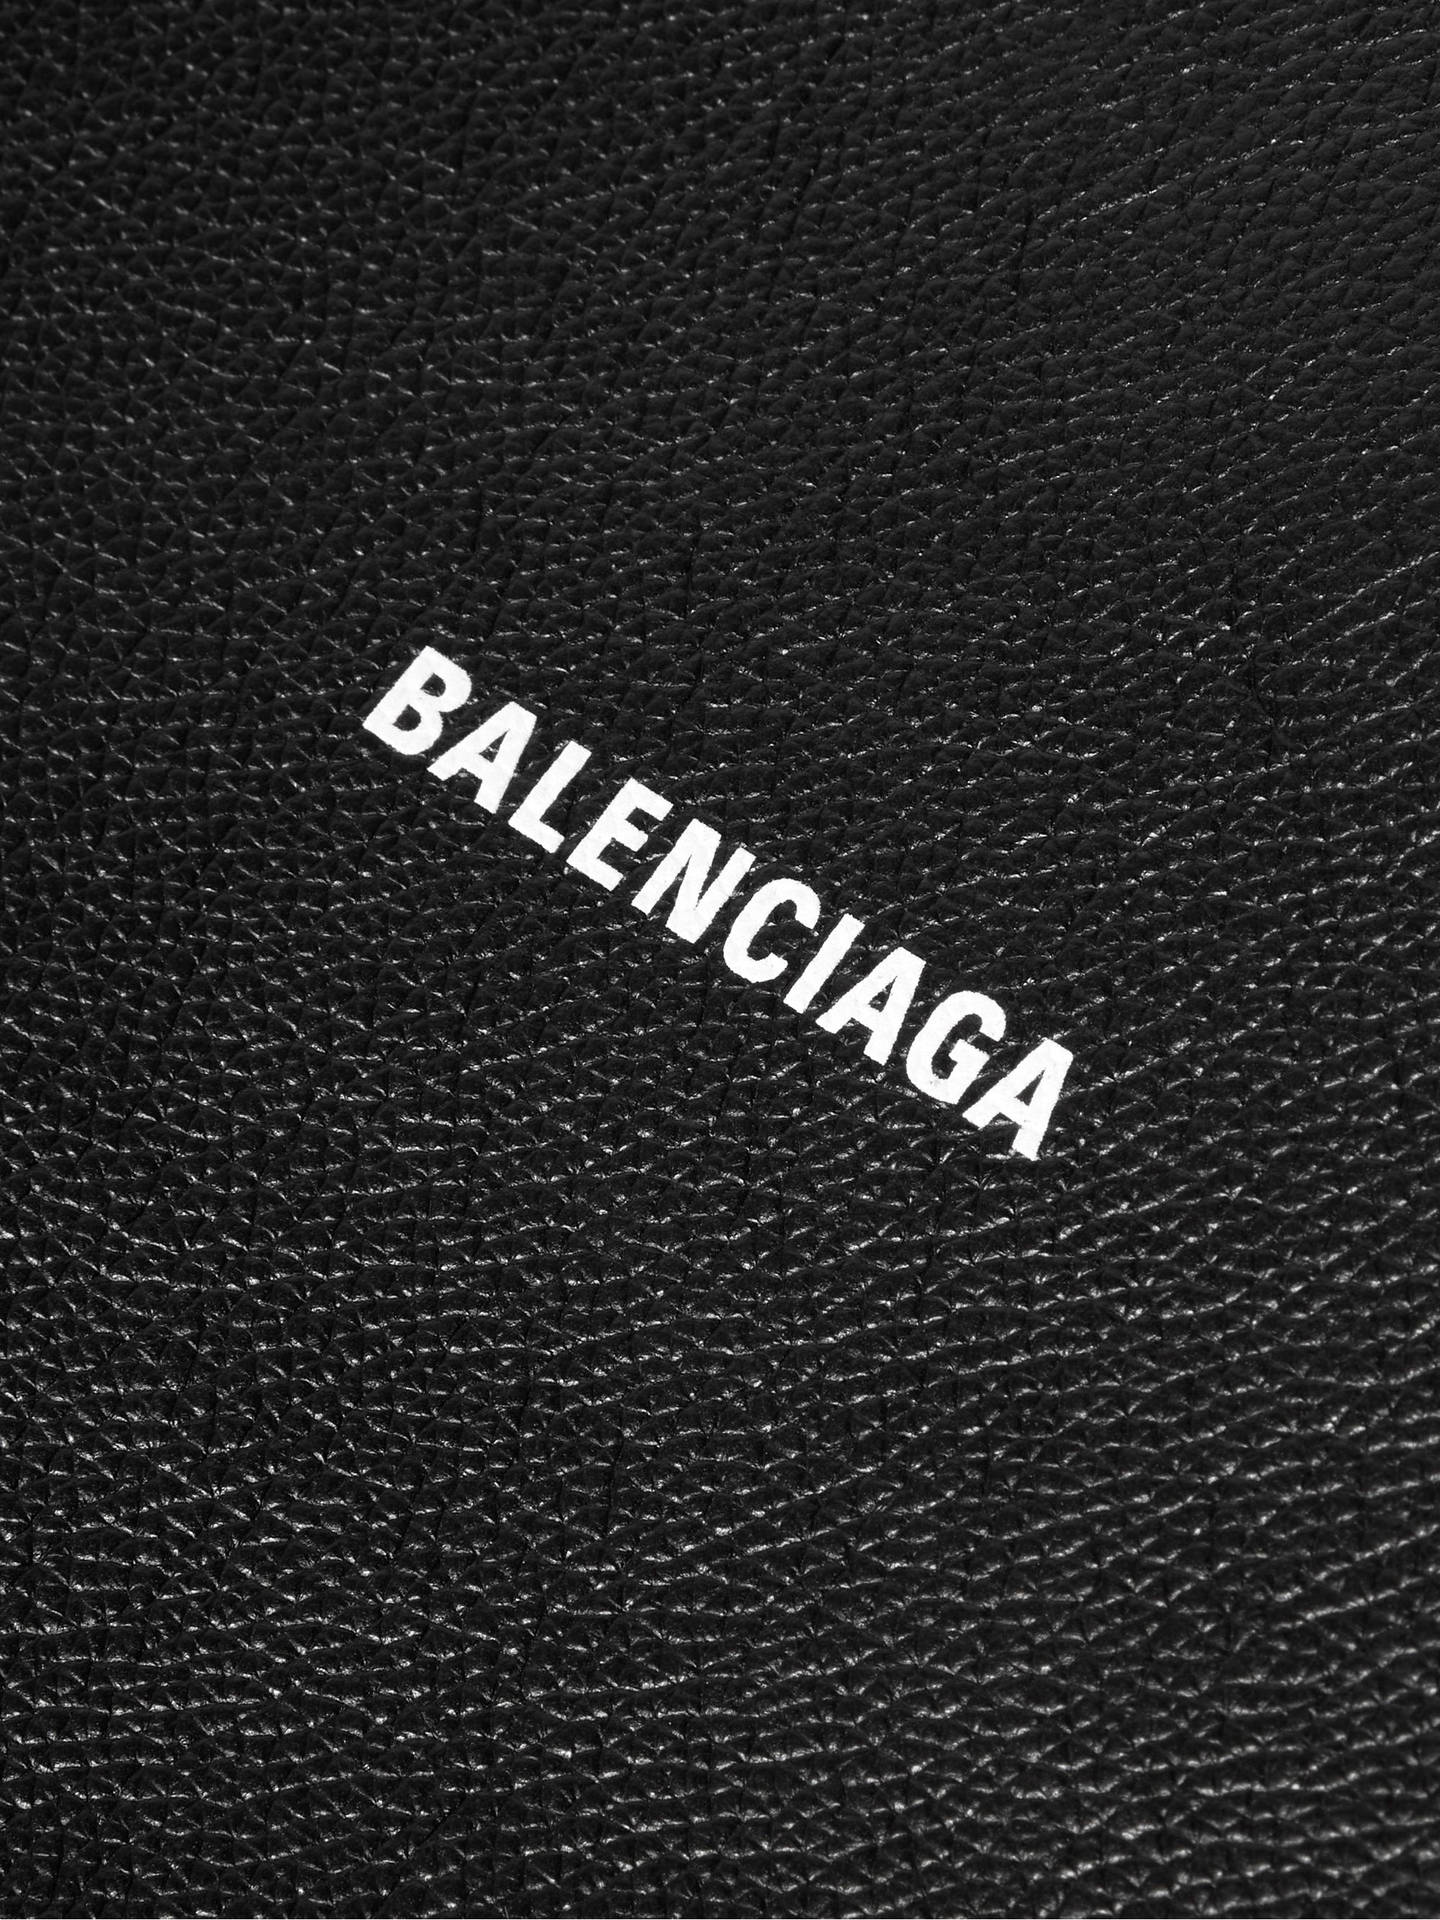 Balenciaga Logo On Leather Wallpaper